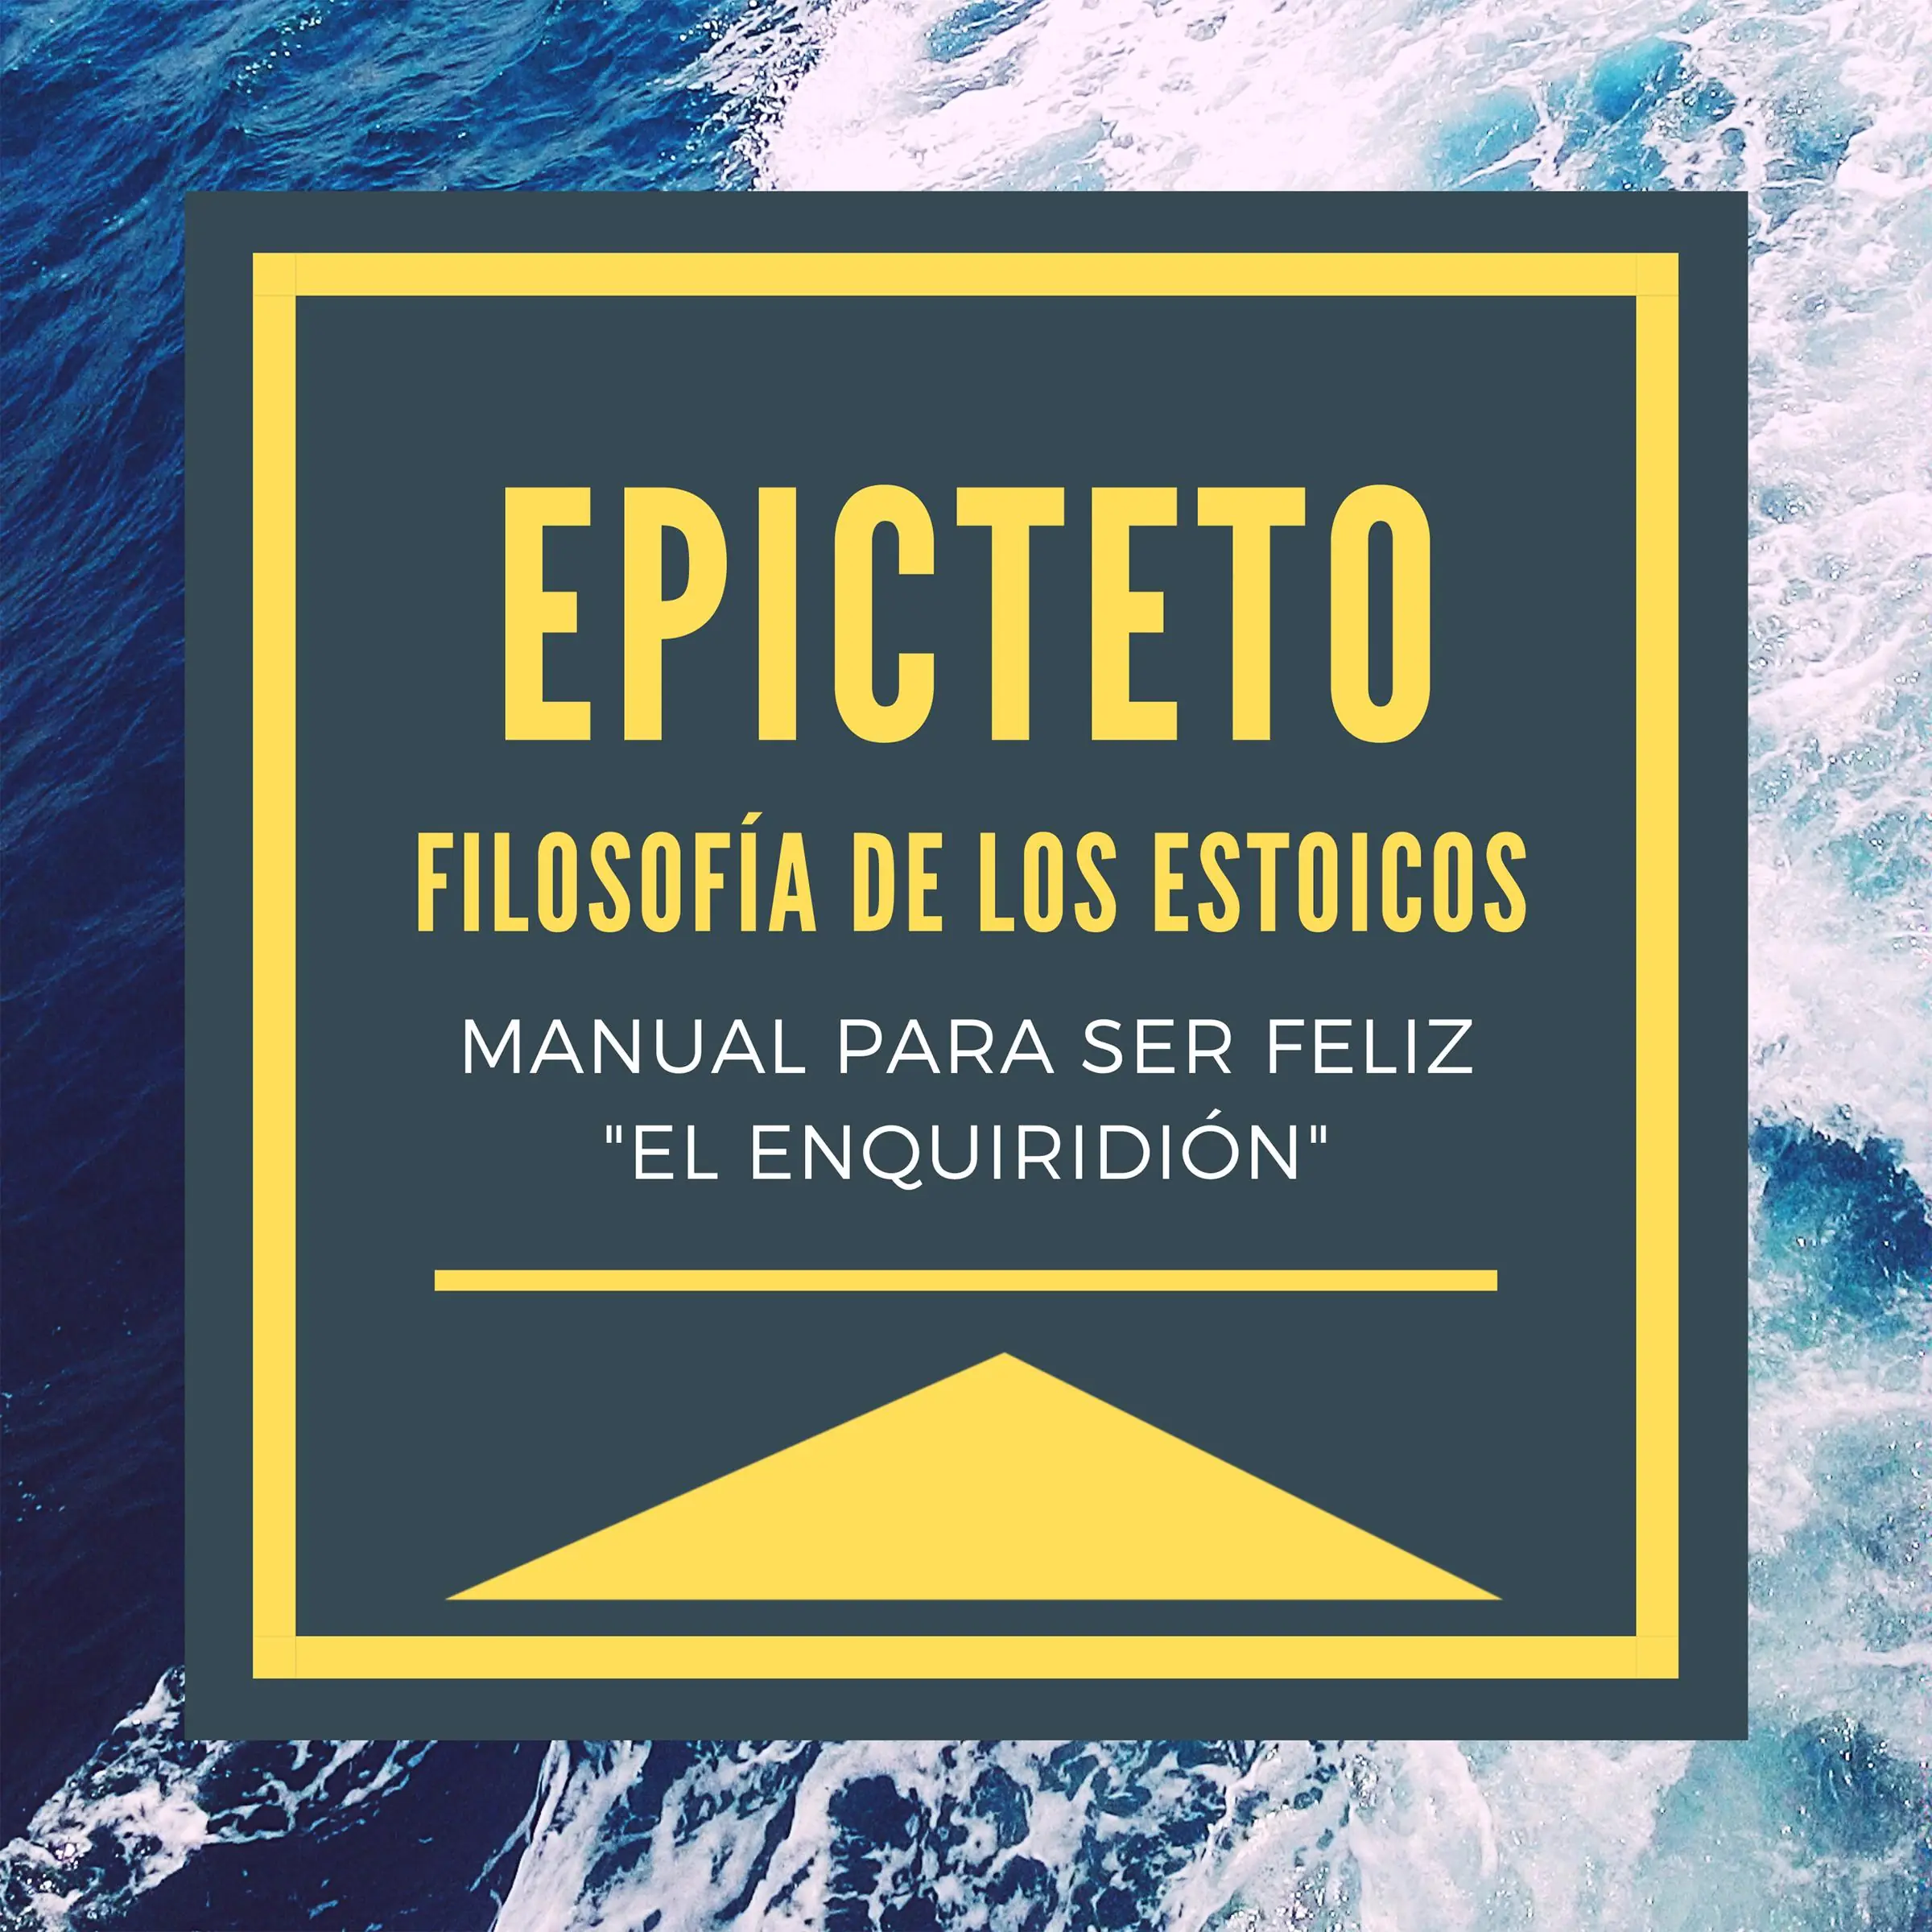 Epicteto - Filosofia de los Estoicos. Manual para ser Feliz "El Enquiridión" by Epicteto Audiobook